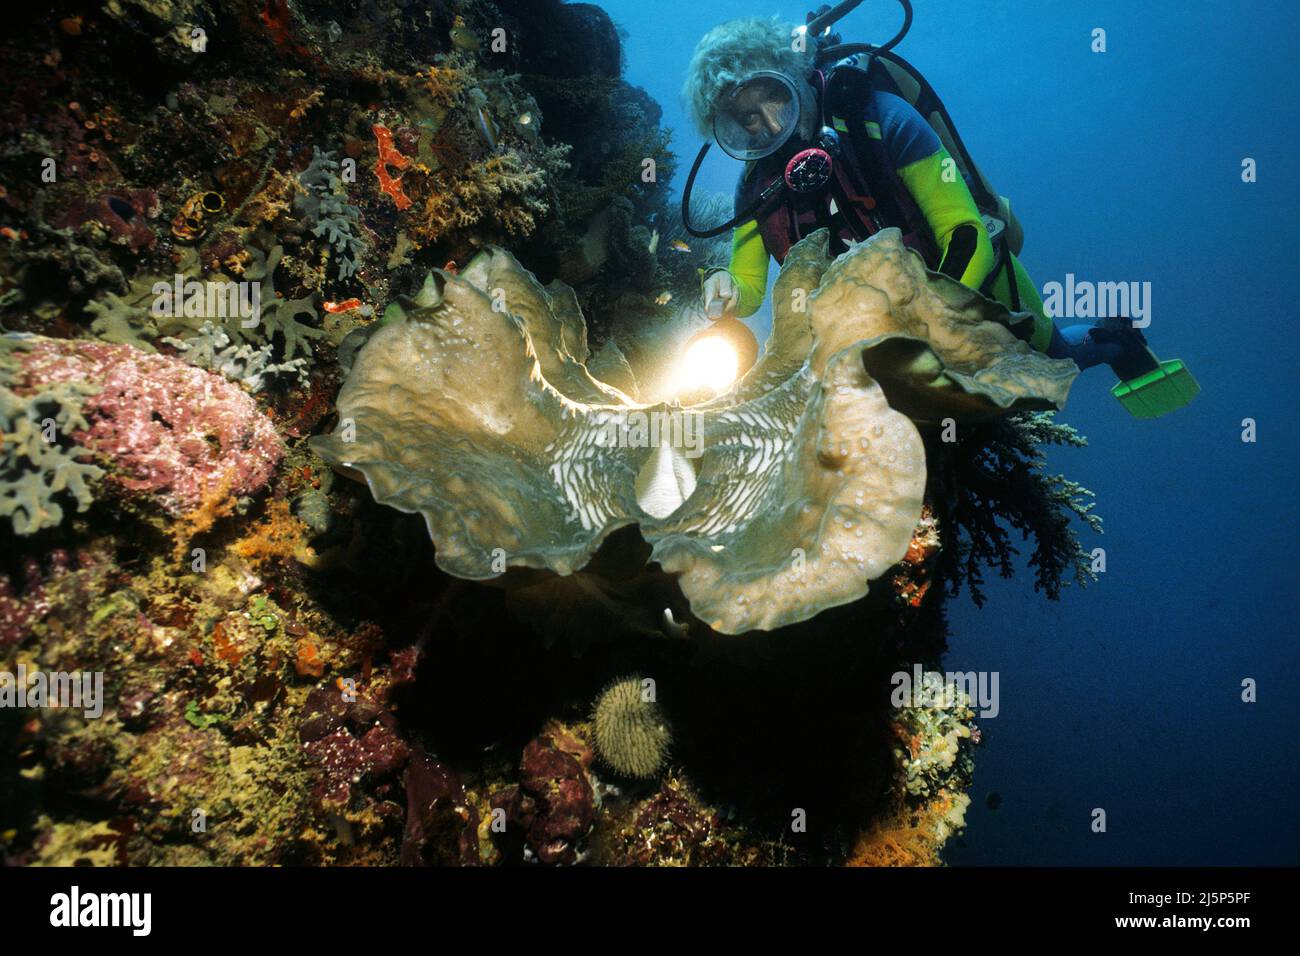 Taucher schaut auf eine große echte Riesenmuschel oder Killermuschel (Tridacna gigas), offen, Ambon, Banda Sea, Indonesien, Asien Stockfoto